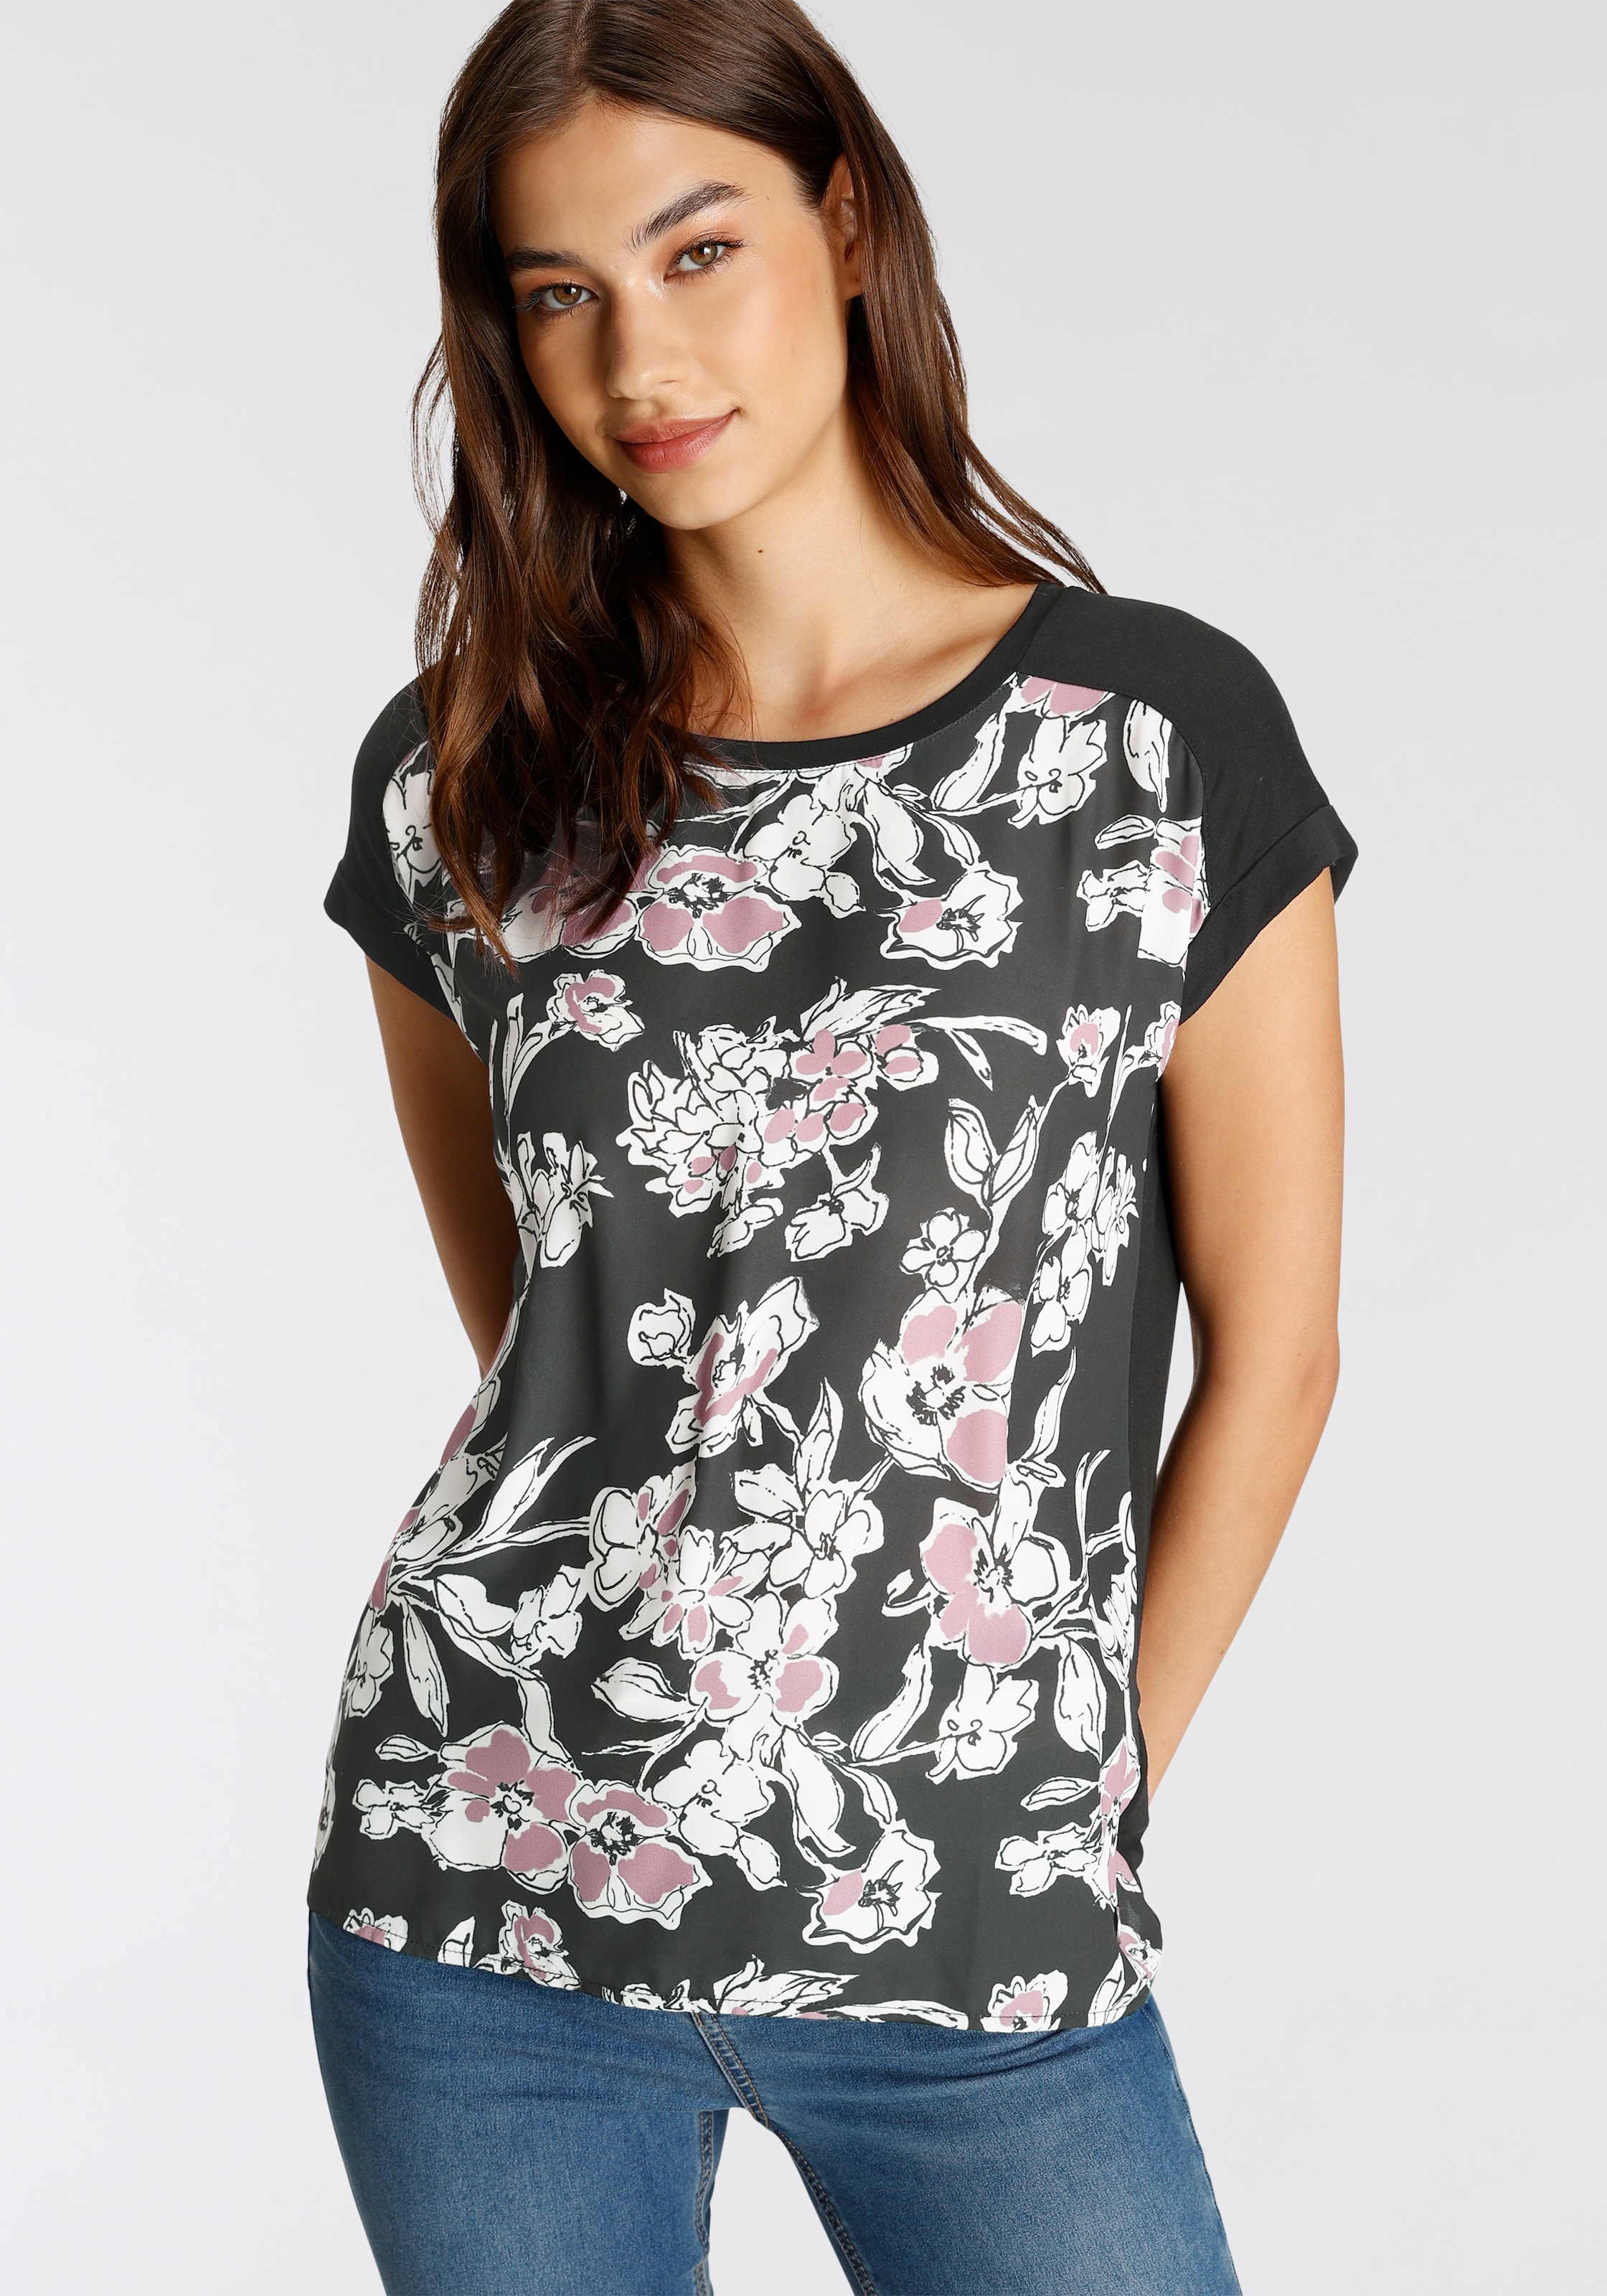 Shirtbluse, mit modischen Allover-Print - NEUE KOLLEKTION